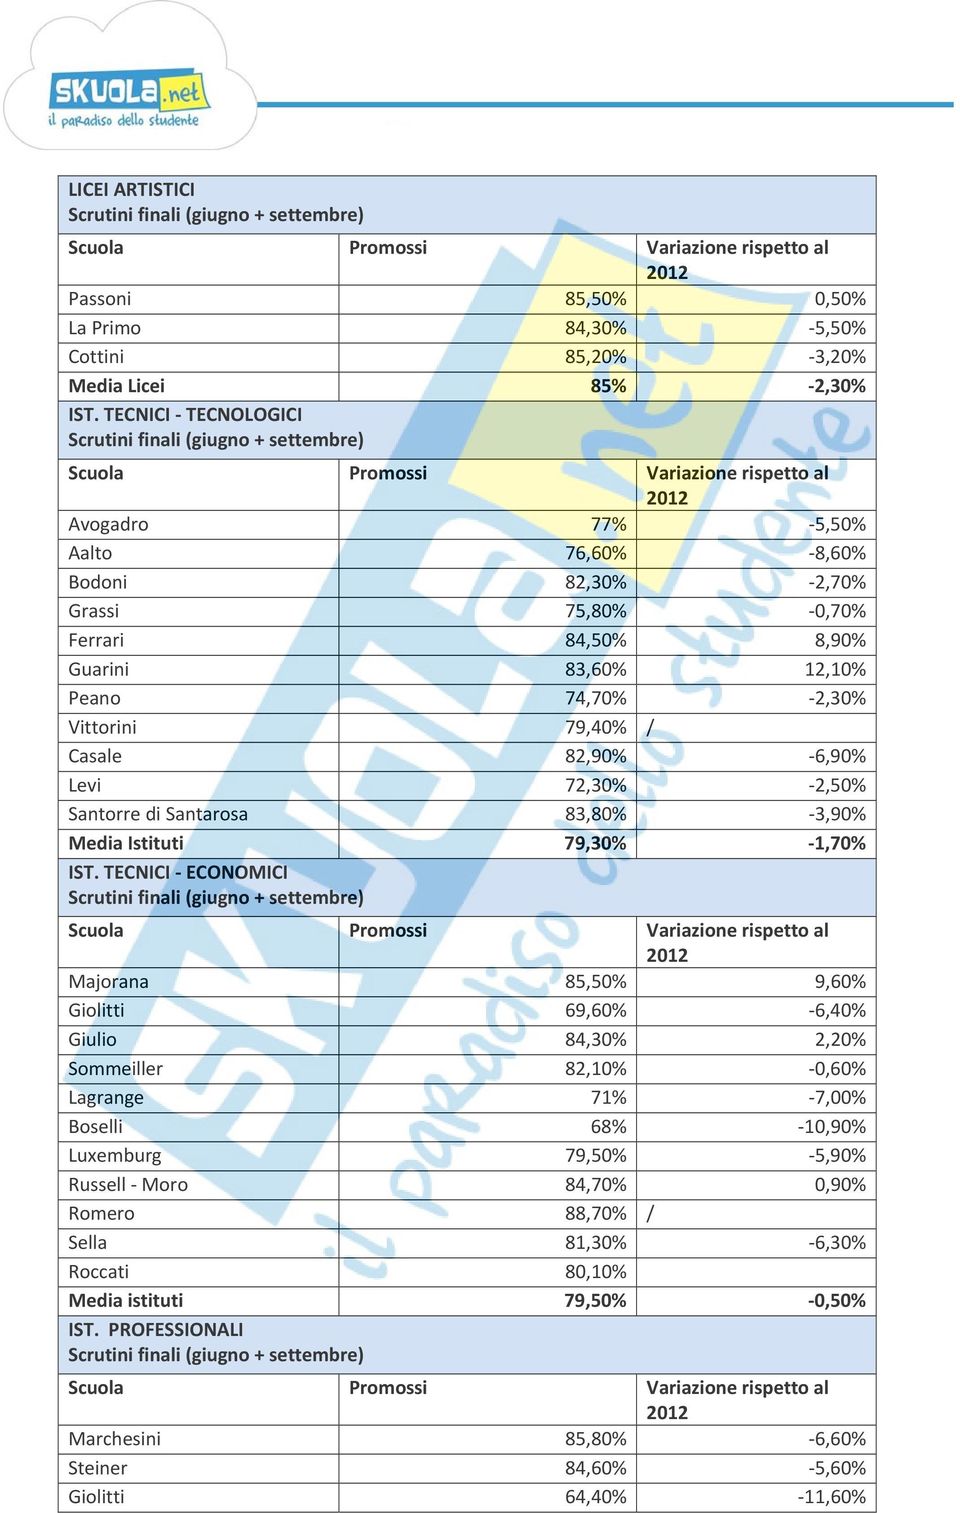 82,90% 6,90% Levi 72,30% 2,50% Santorre di Santarosa 83,80% 3,90% Media Istituti 79,30% 1,70% IST.